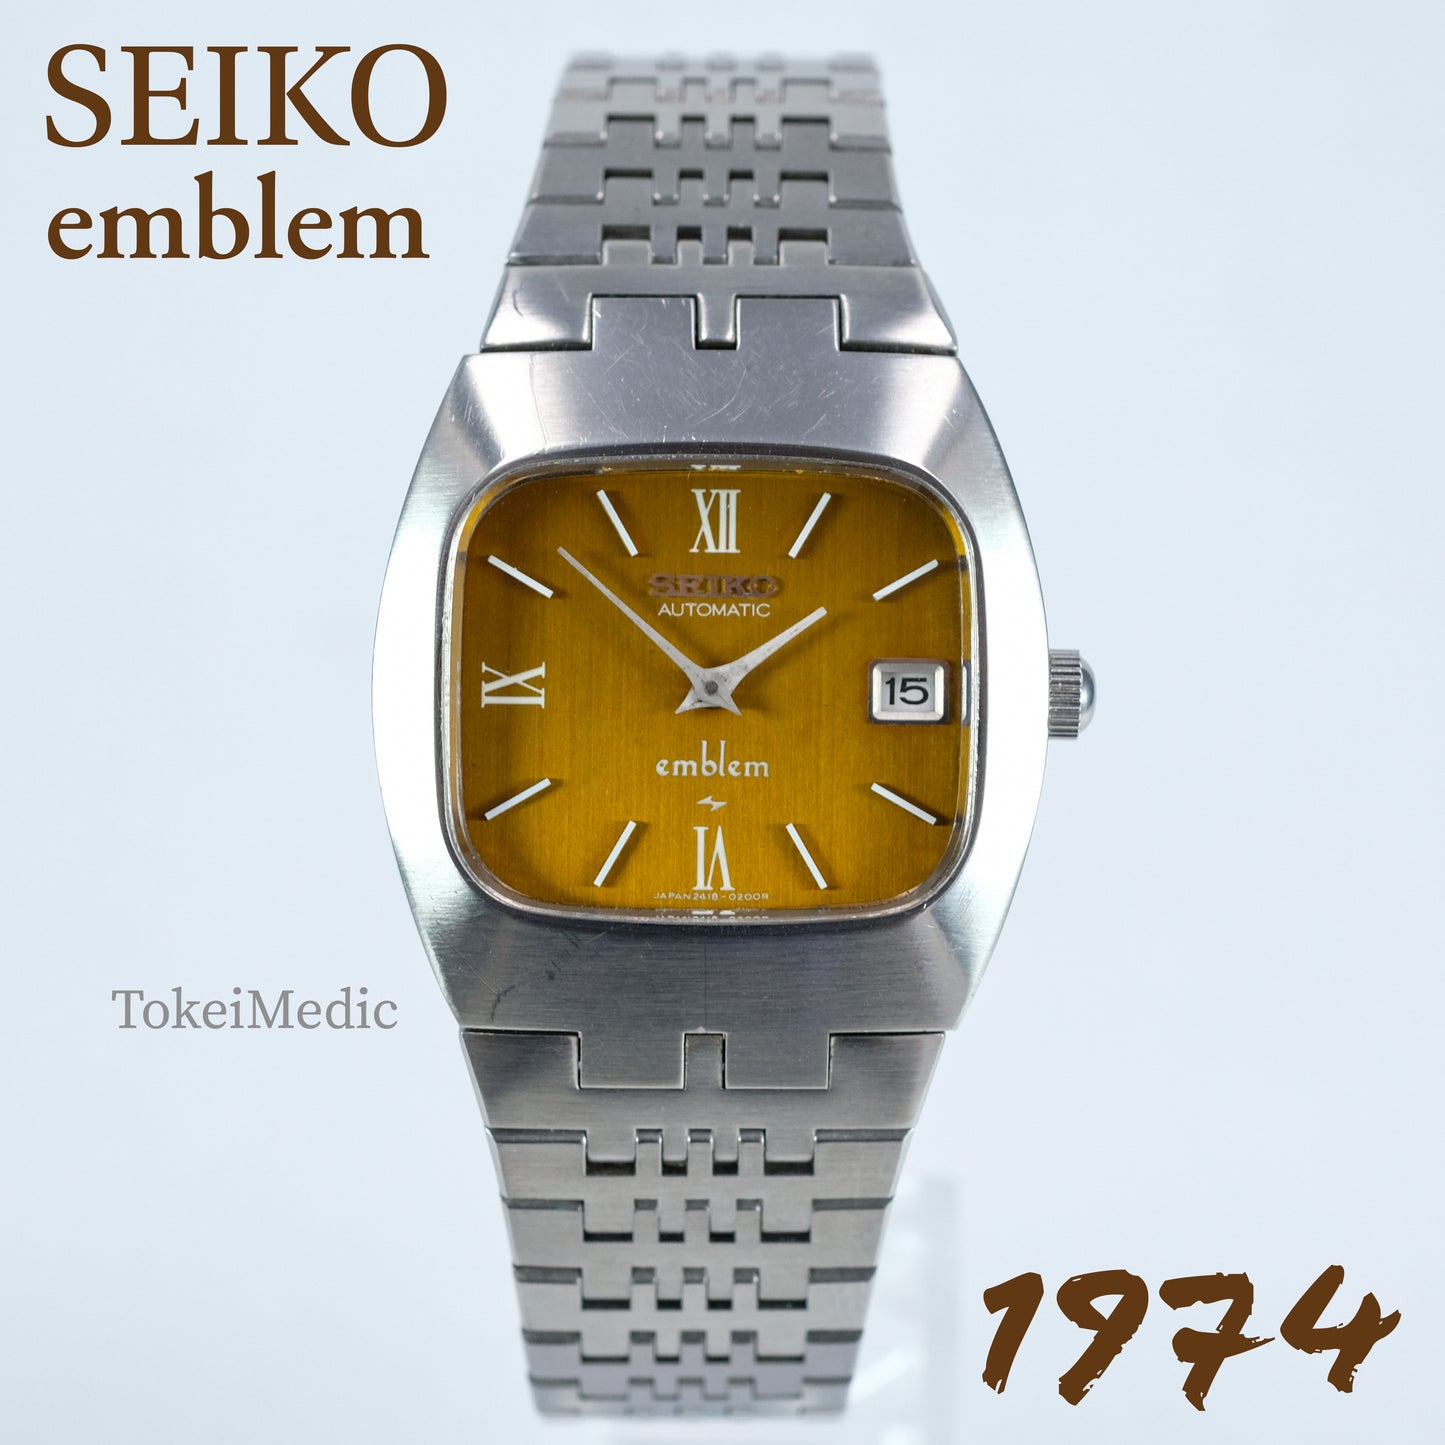 1974 Seiko Emblem 2418-3020